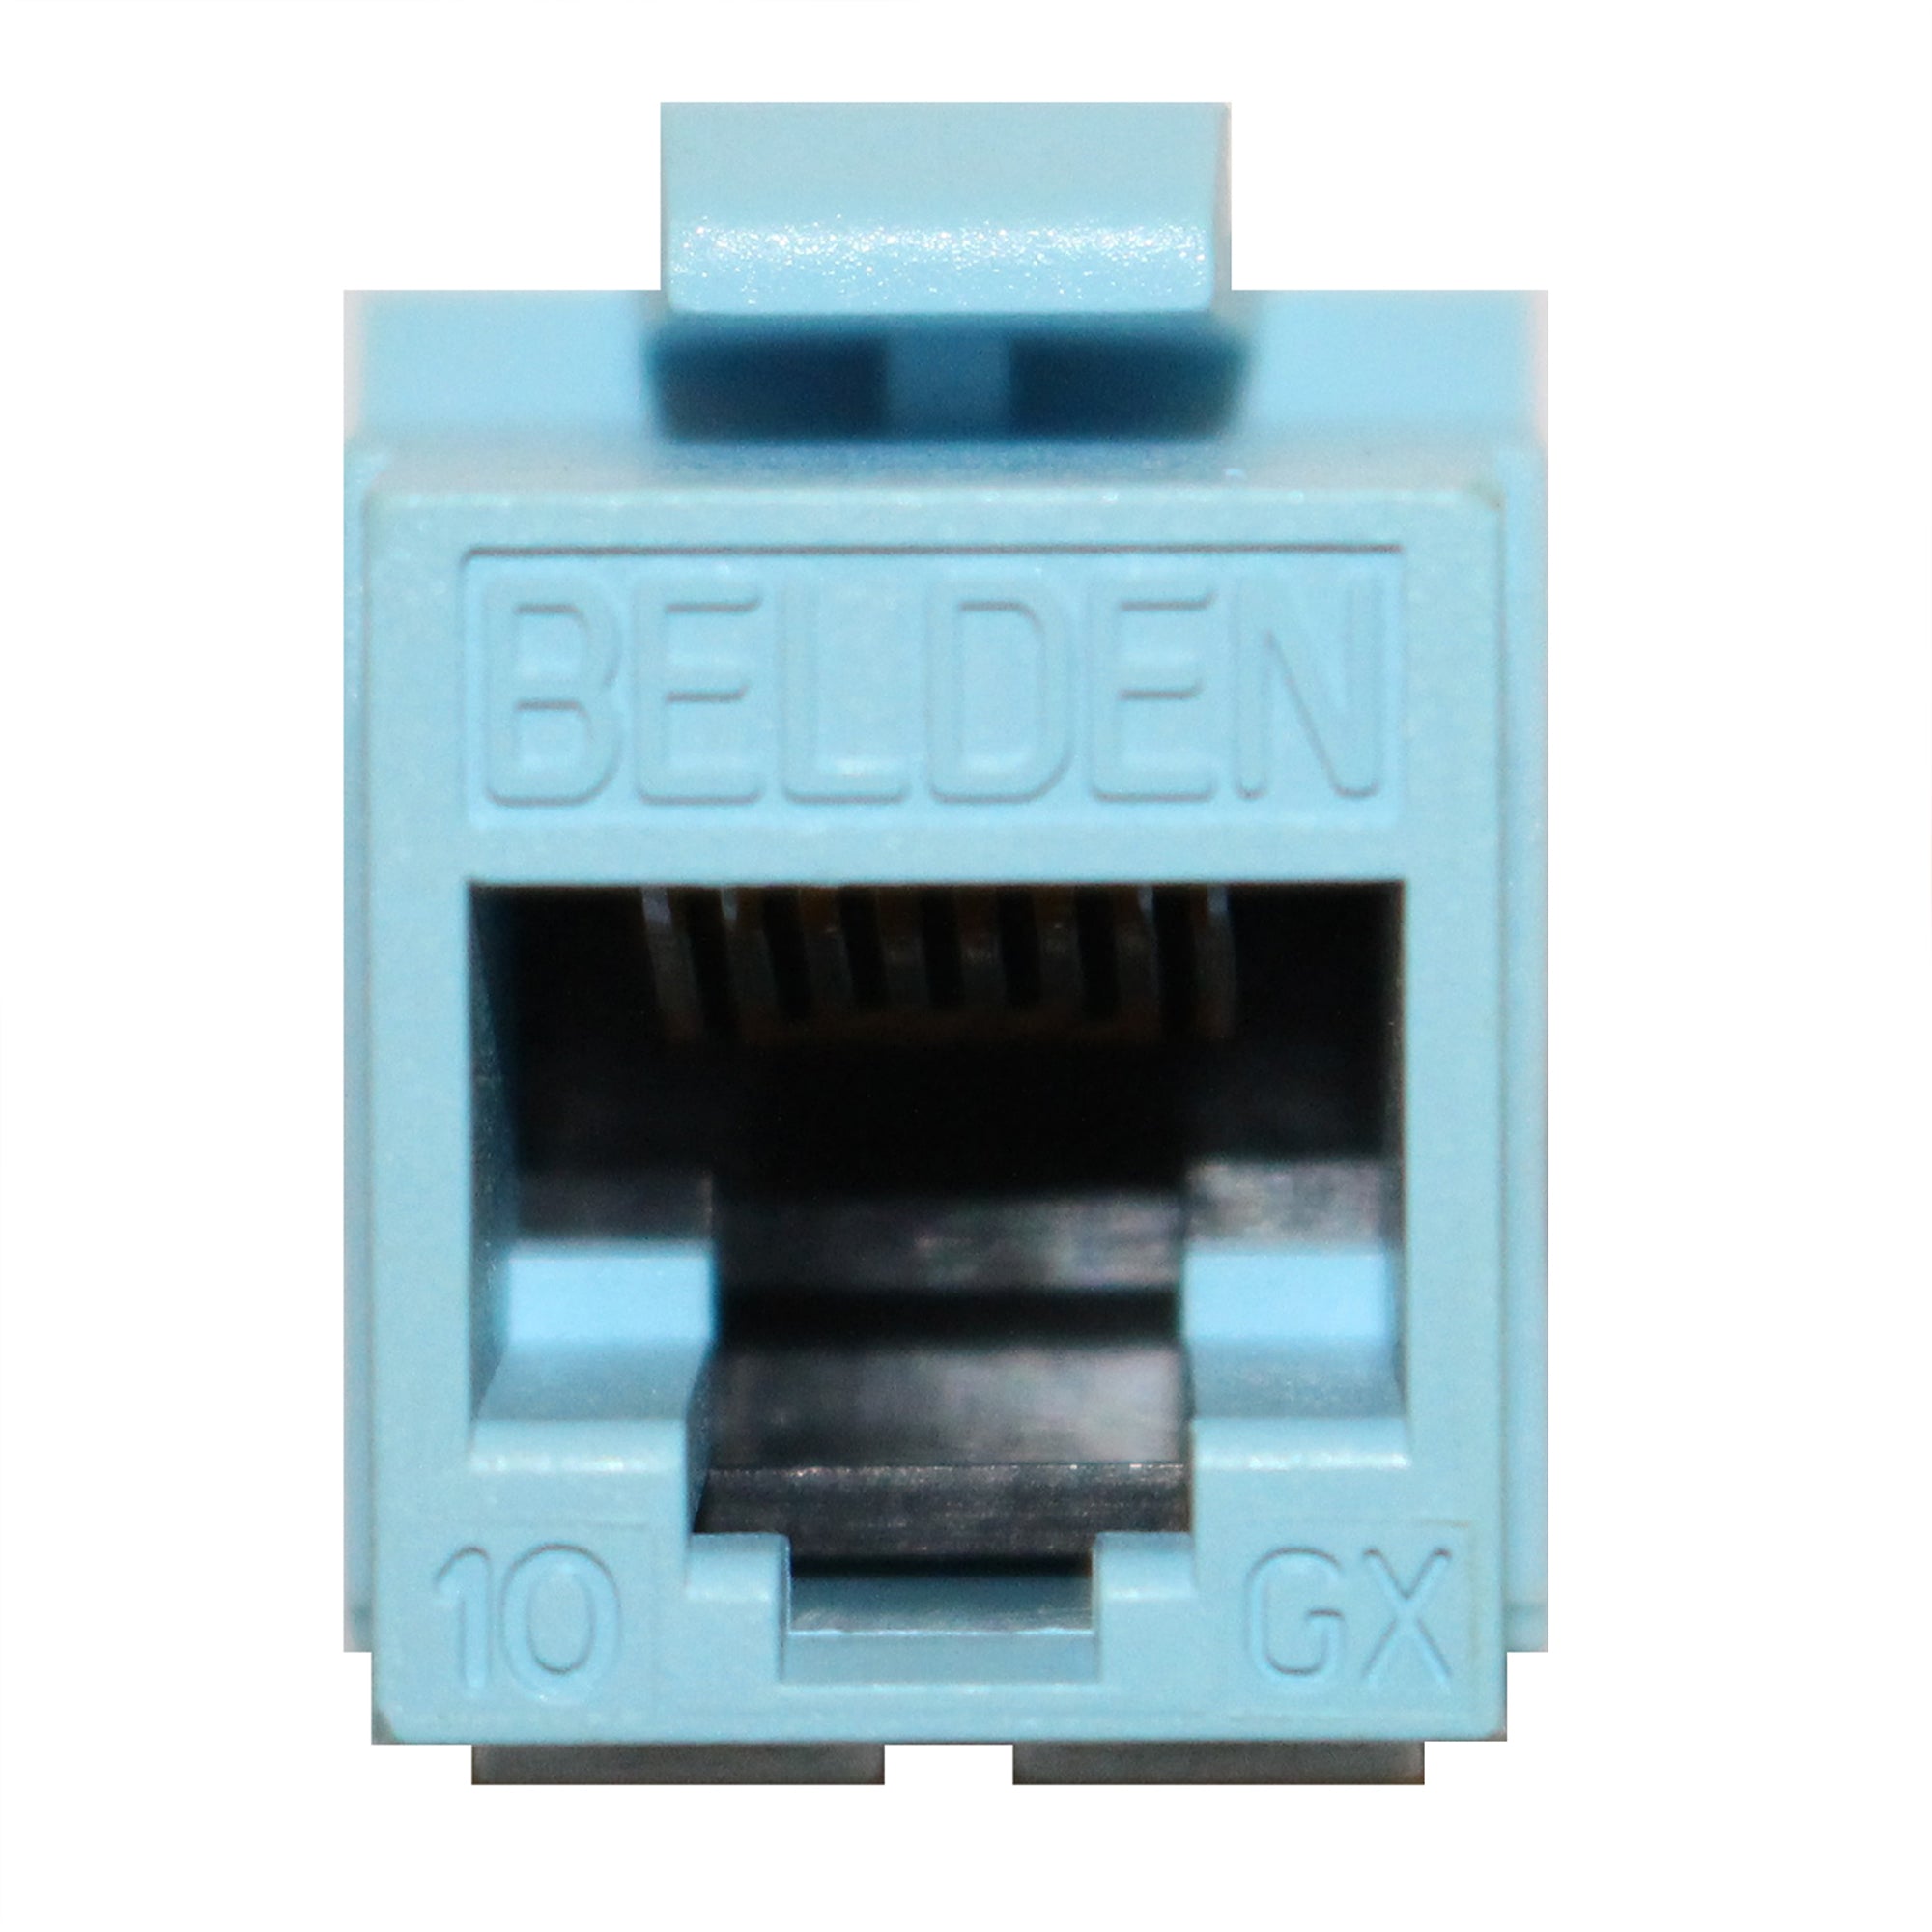 Belden, BELDEN AX102288 10GX CAT6A MODULAR CONNECTOR, C6A, RJ45, KEYCONNECT, BLUE